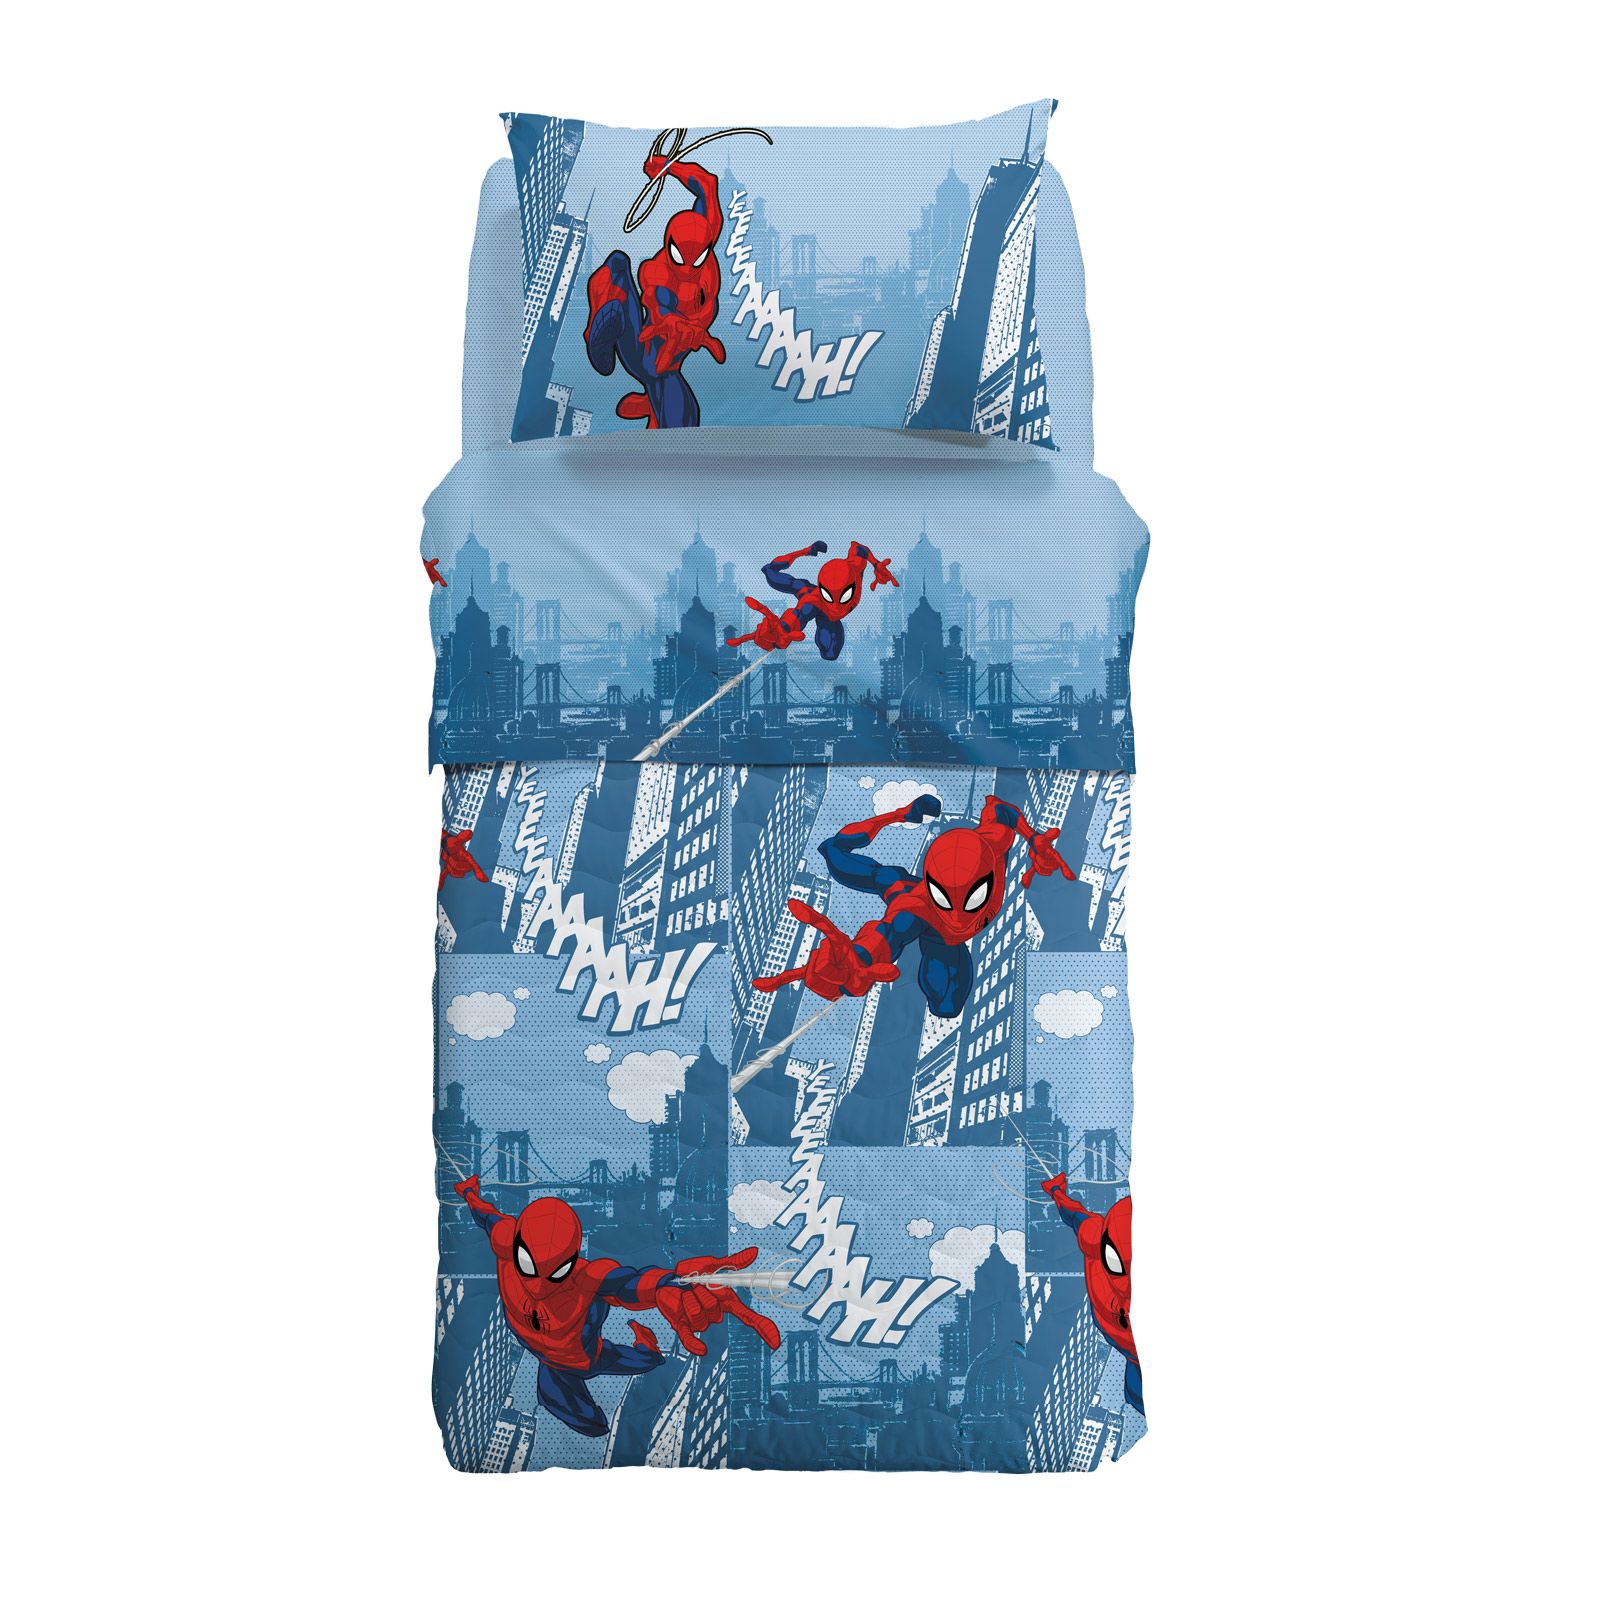 Caleffi Trapunta invernale singola Spiderman città Caleffi azzurro 